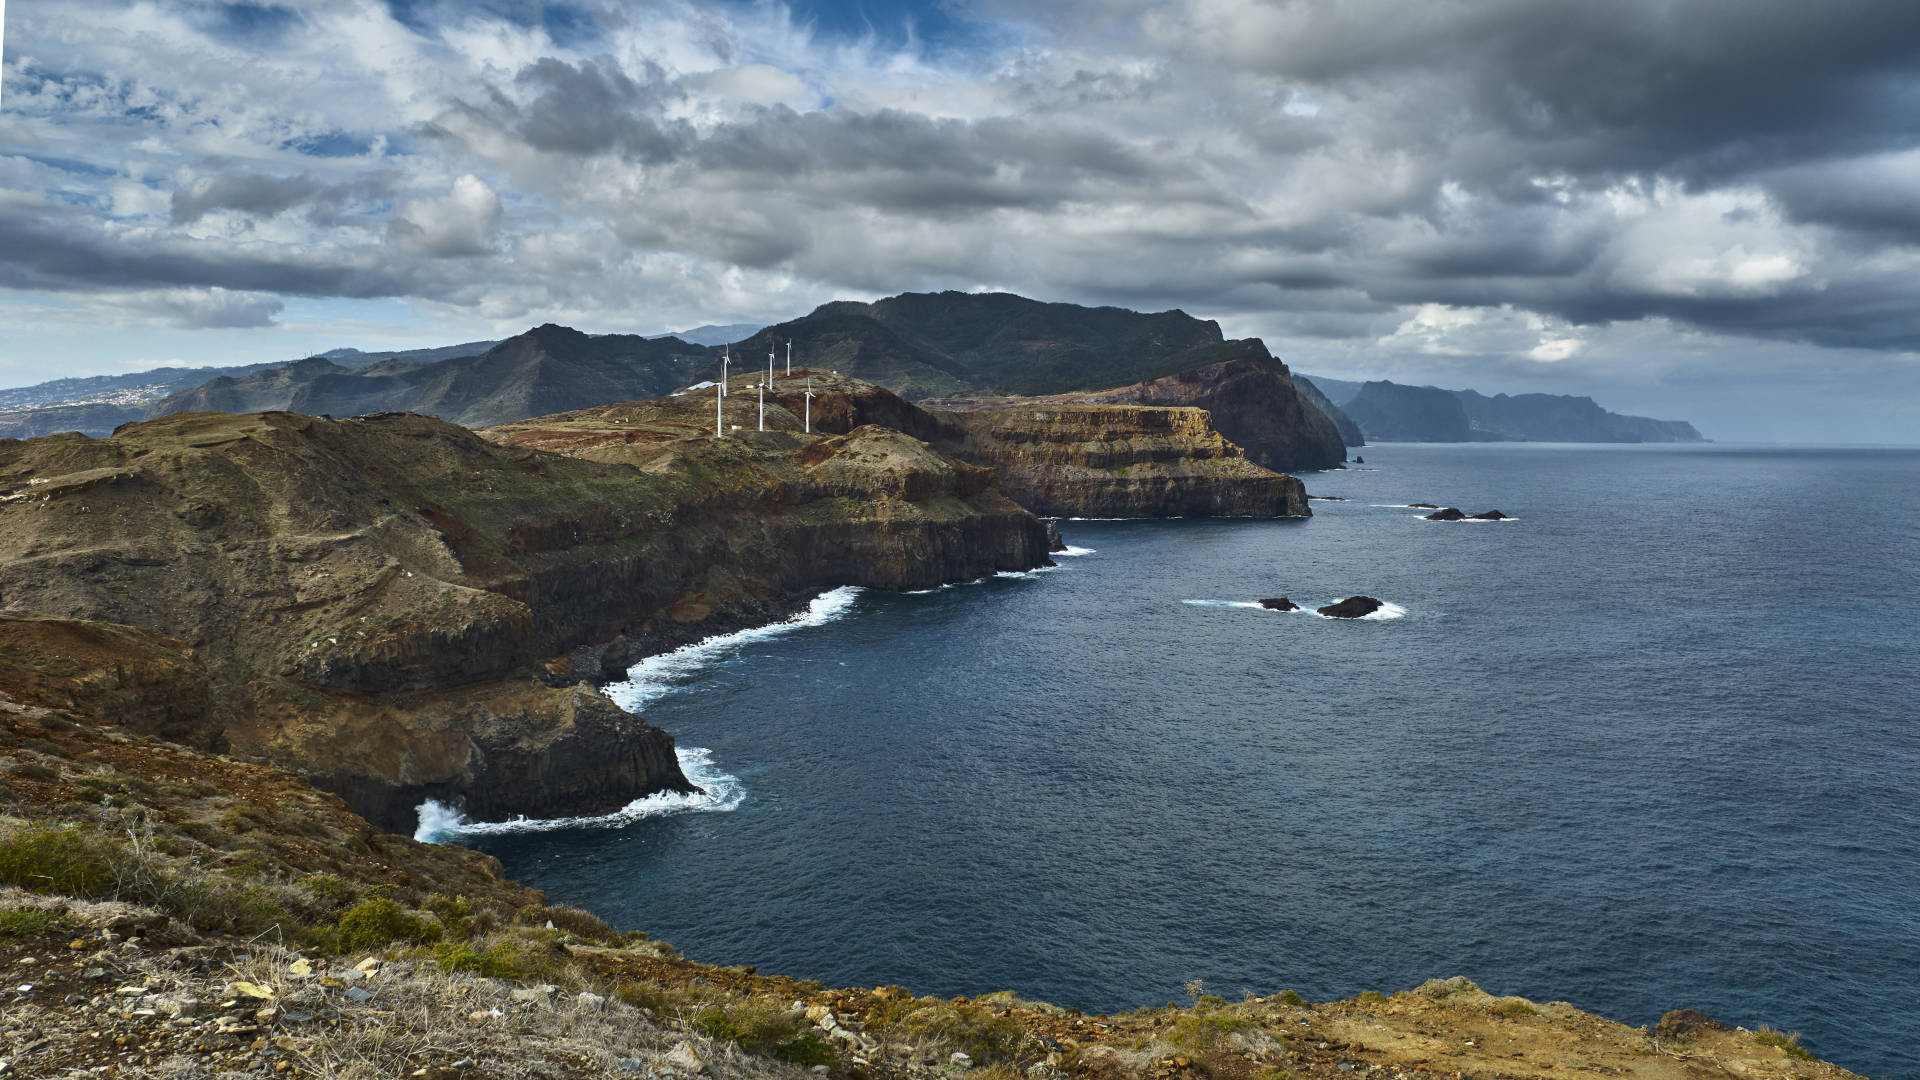 Spektakuläres Madeira – das Ostkap Ponta de São Lourenço.